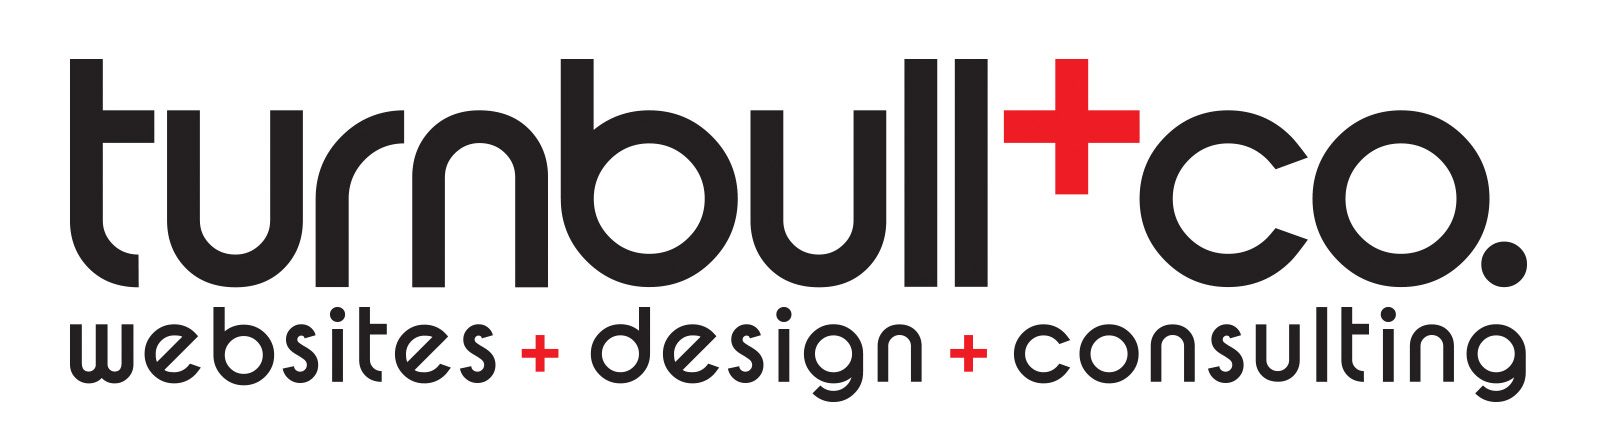 Turnbull & Company logo